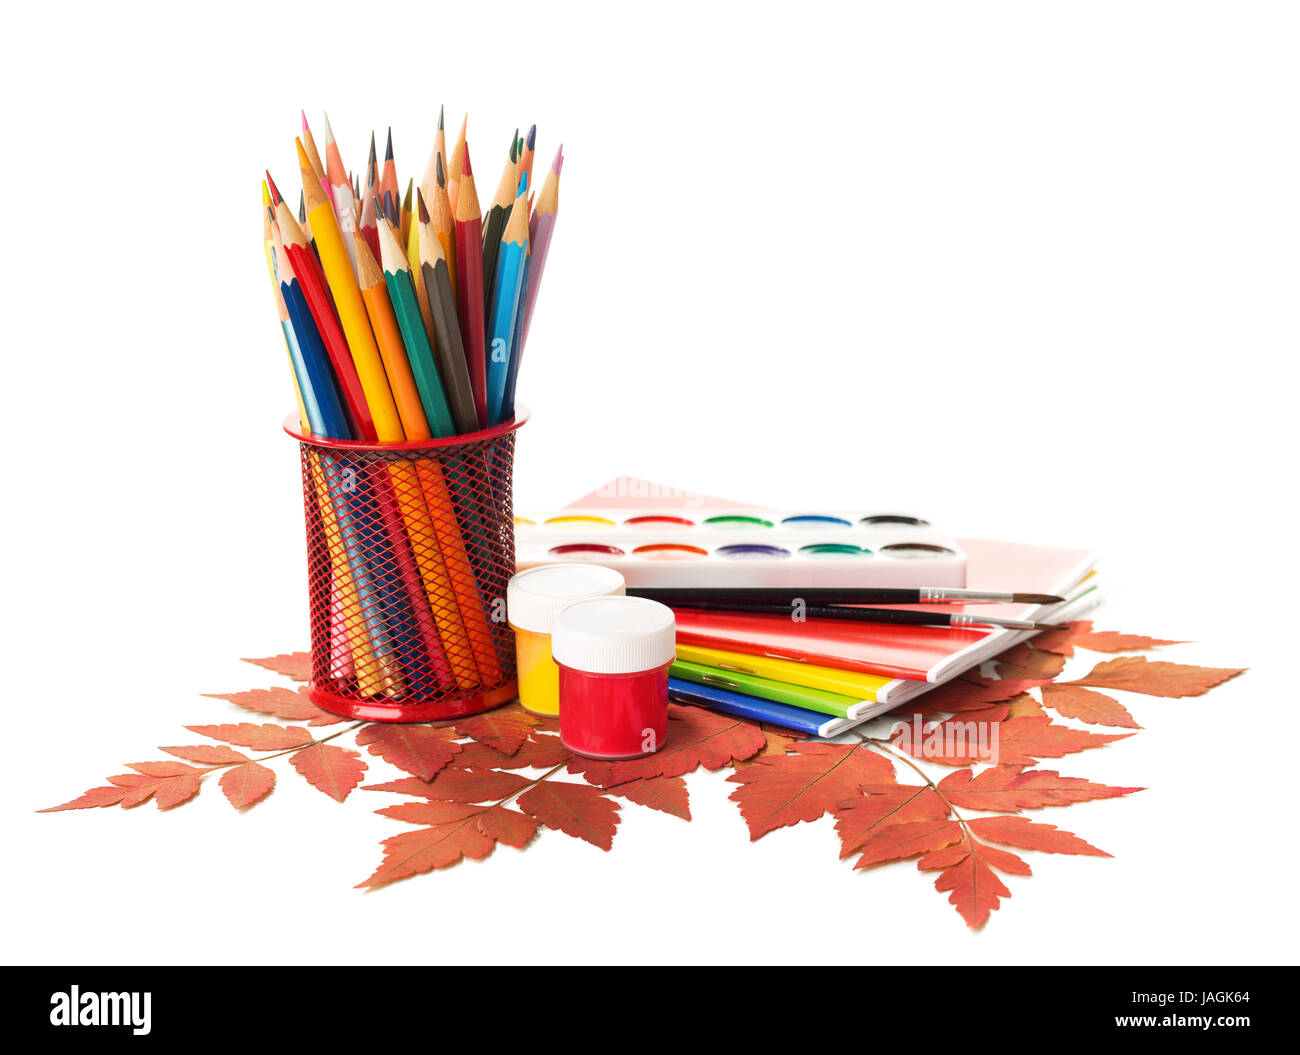 Ausstattung der Schule mit Stiften, Farben, Pinsel und Herbstlaub isoliert auf weiss.  Zurück zum Schulkonzept. Schule Schreibwaren Stockfoto